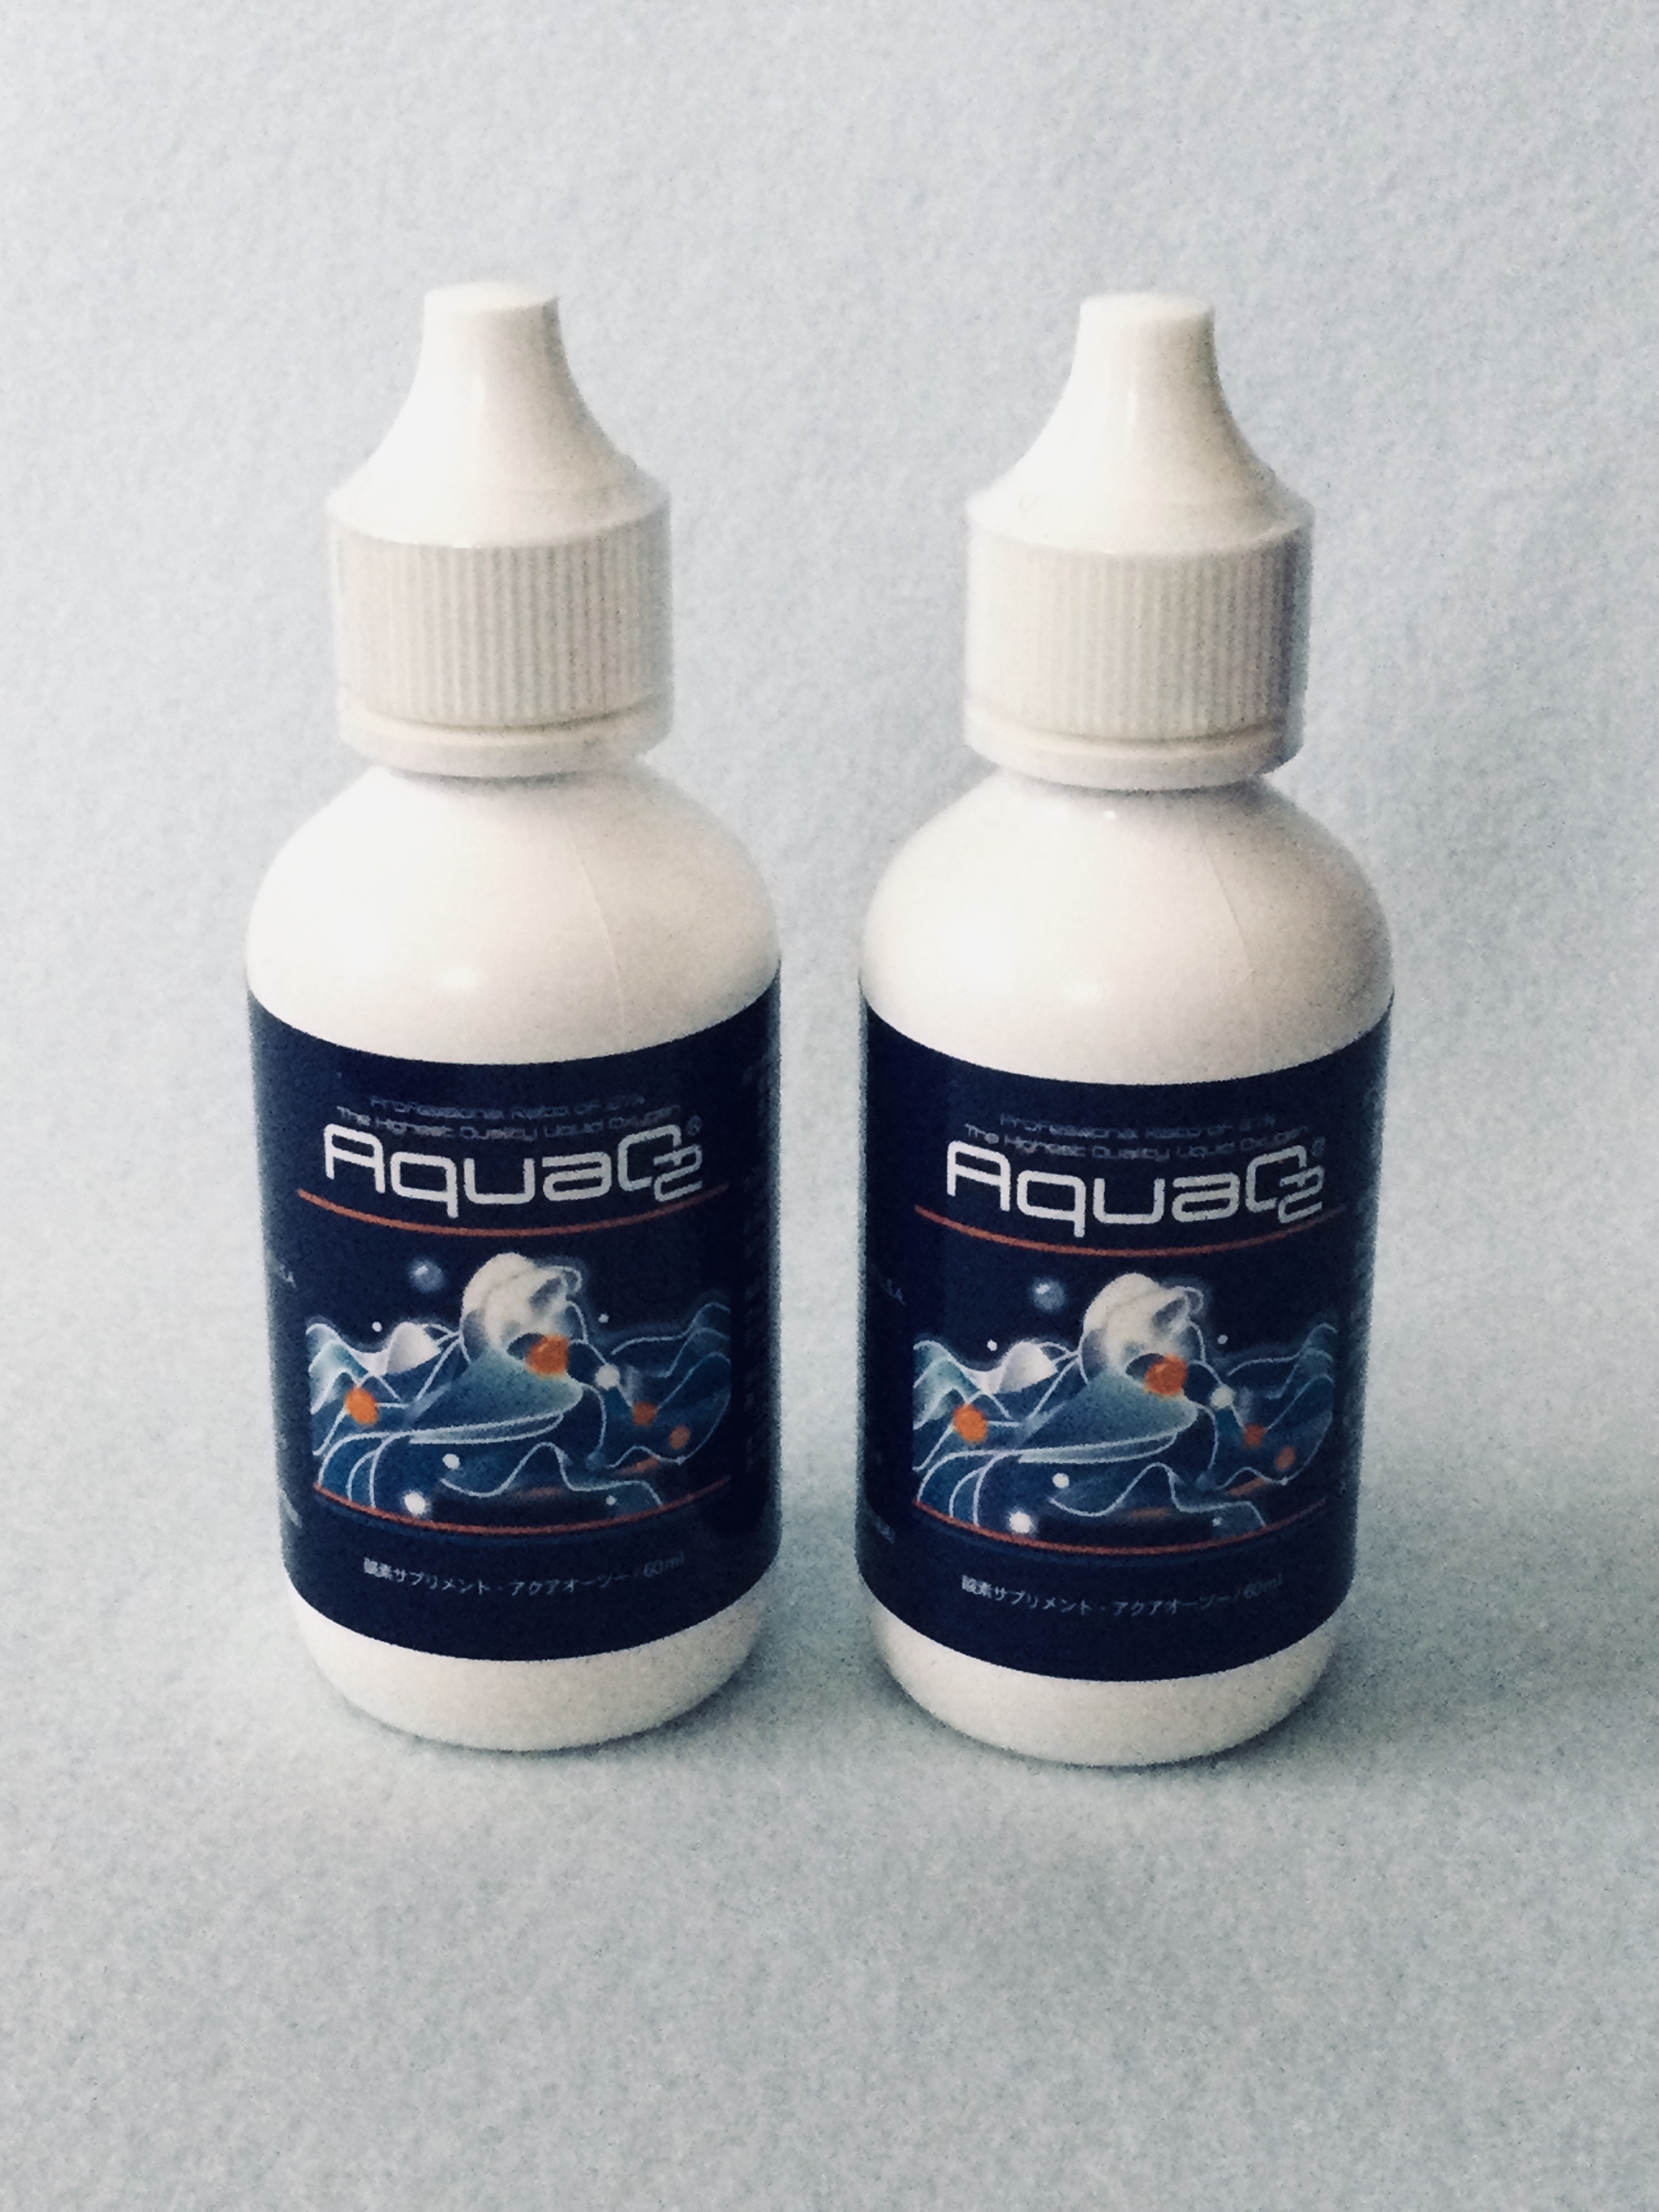 飲む酸素AquaO2〈アクアオーツー〉2本セット画像